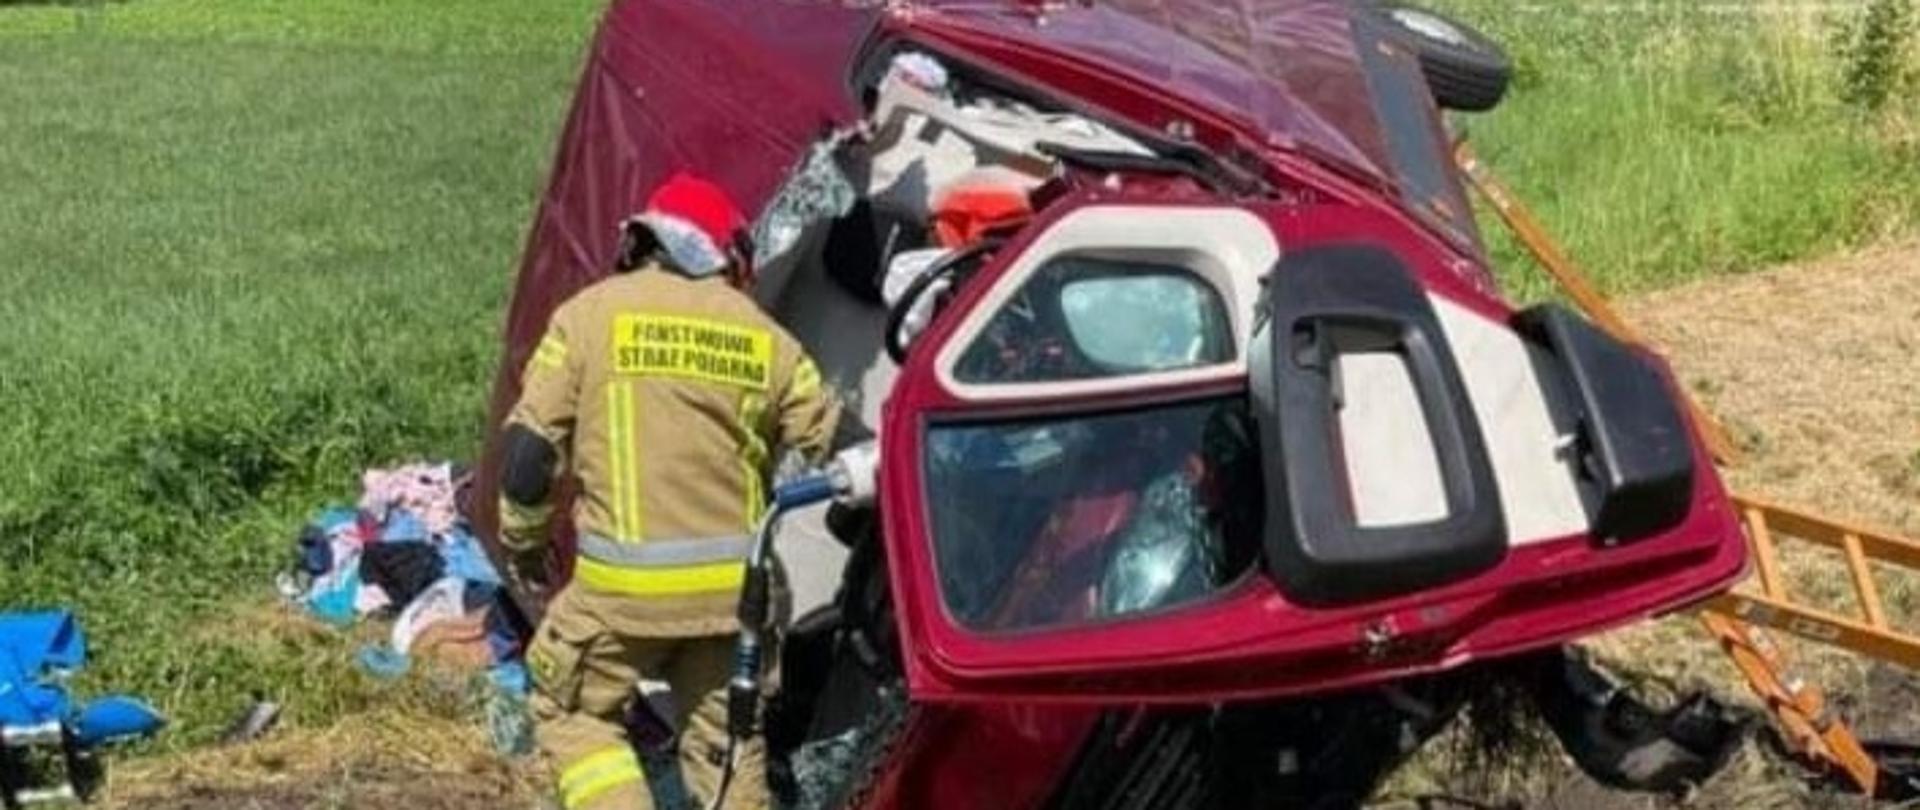 Zdjęcie przedstawia czerwony samochód dostawczy, który brał udział w zdarzeniu. Obok samochodu stoi strażak pracujący sprzętem hydraulicznym.